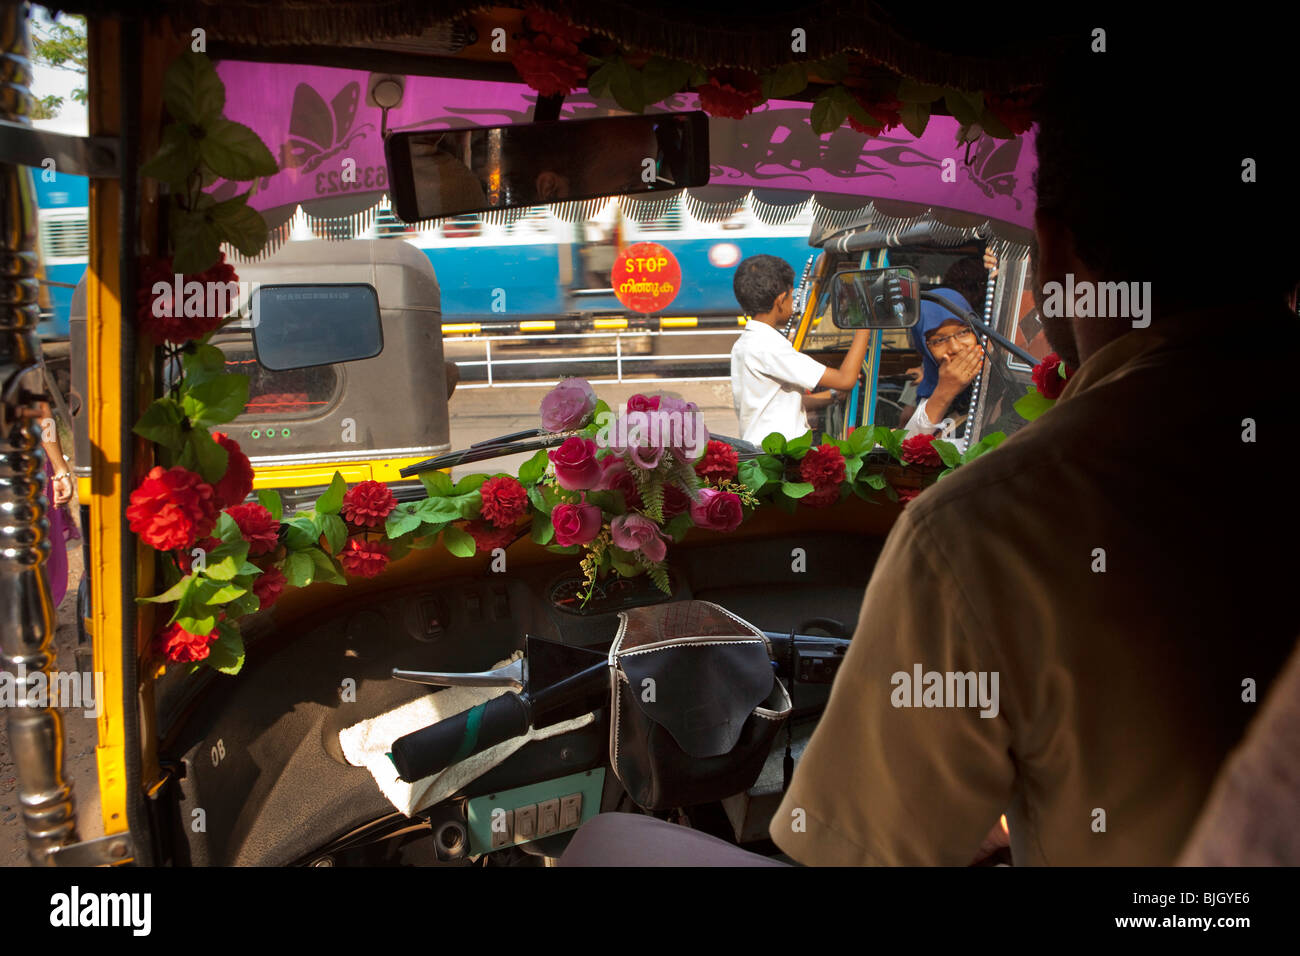 India Kerala, Calicut, Kozhikode, vista dall'interno di autorickshaw al passaggio a livello ferroviario Foto Stock